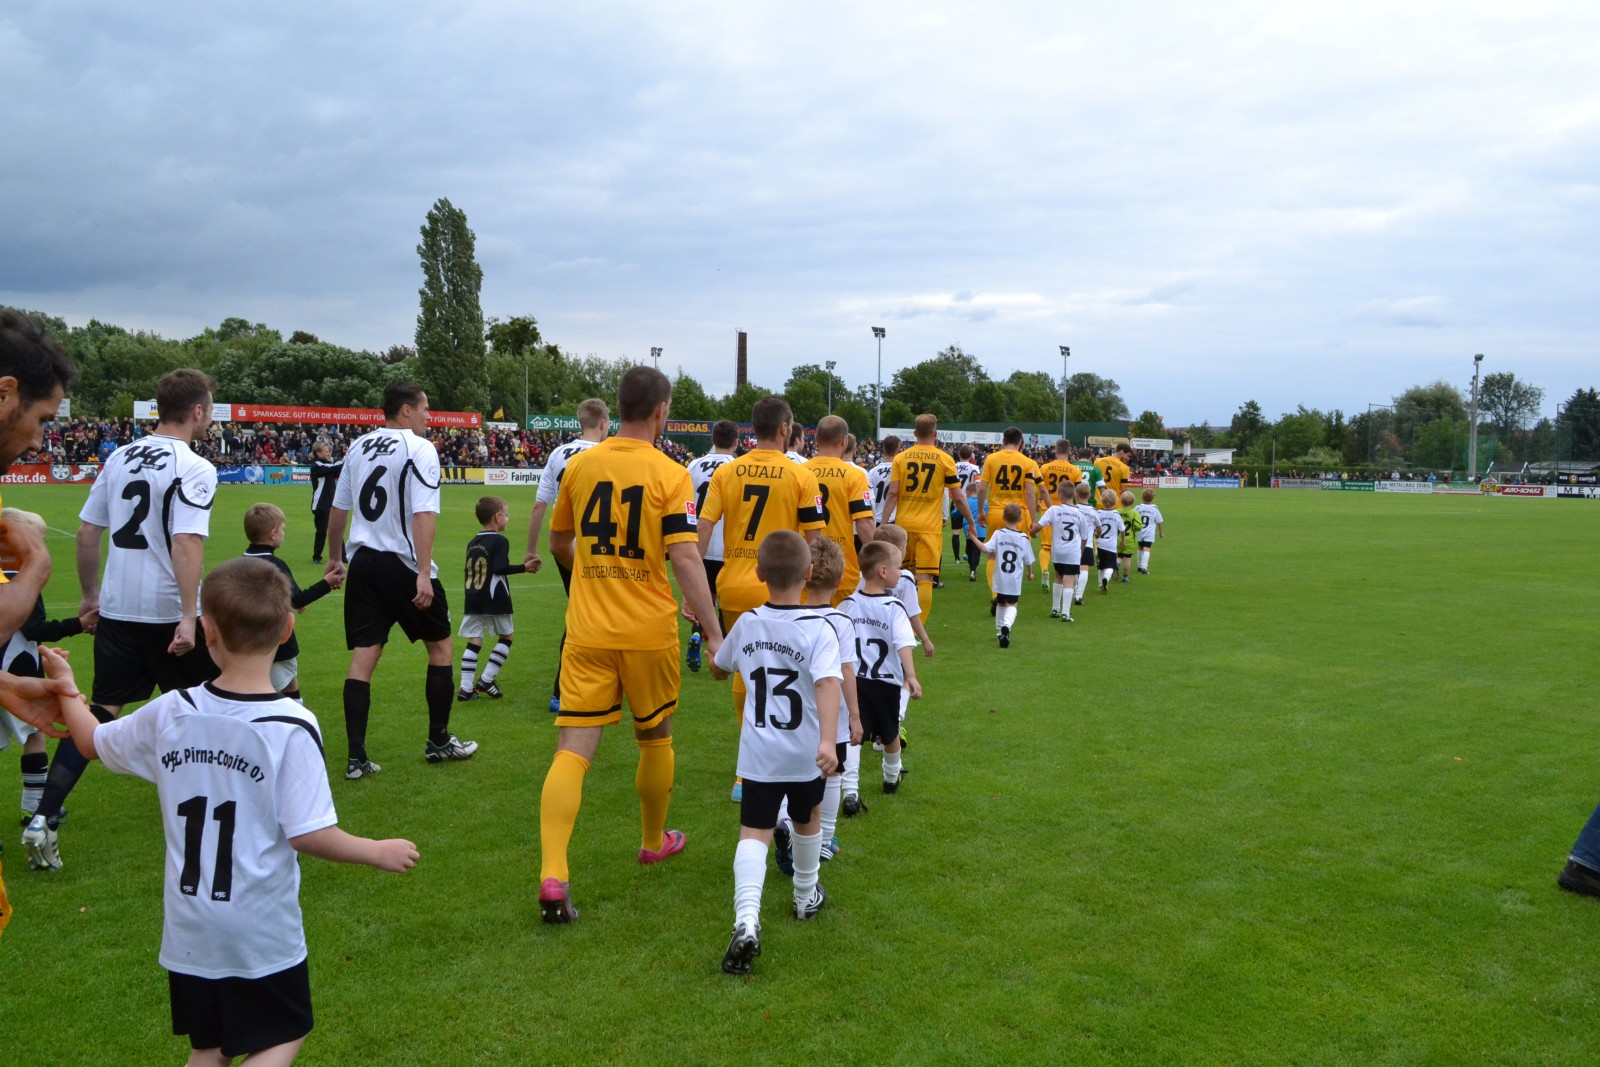 Die Teams von Pirna-Copitz und Dynamo Dresden laufen mit VfL-Nachwuchsspielern auf das Feld.